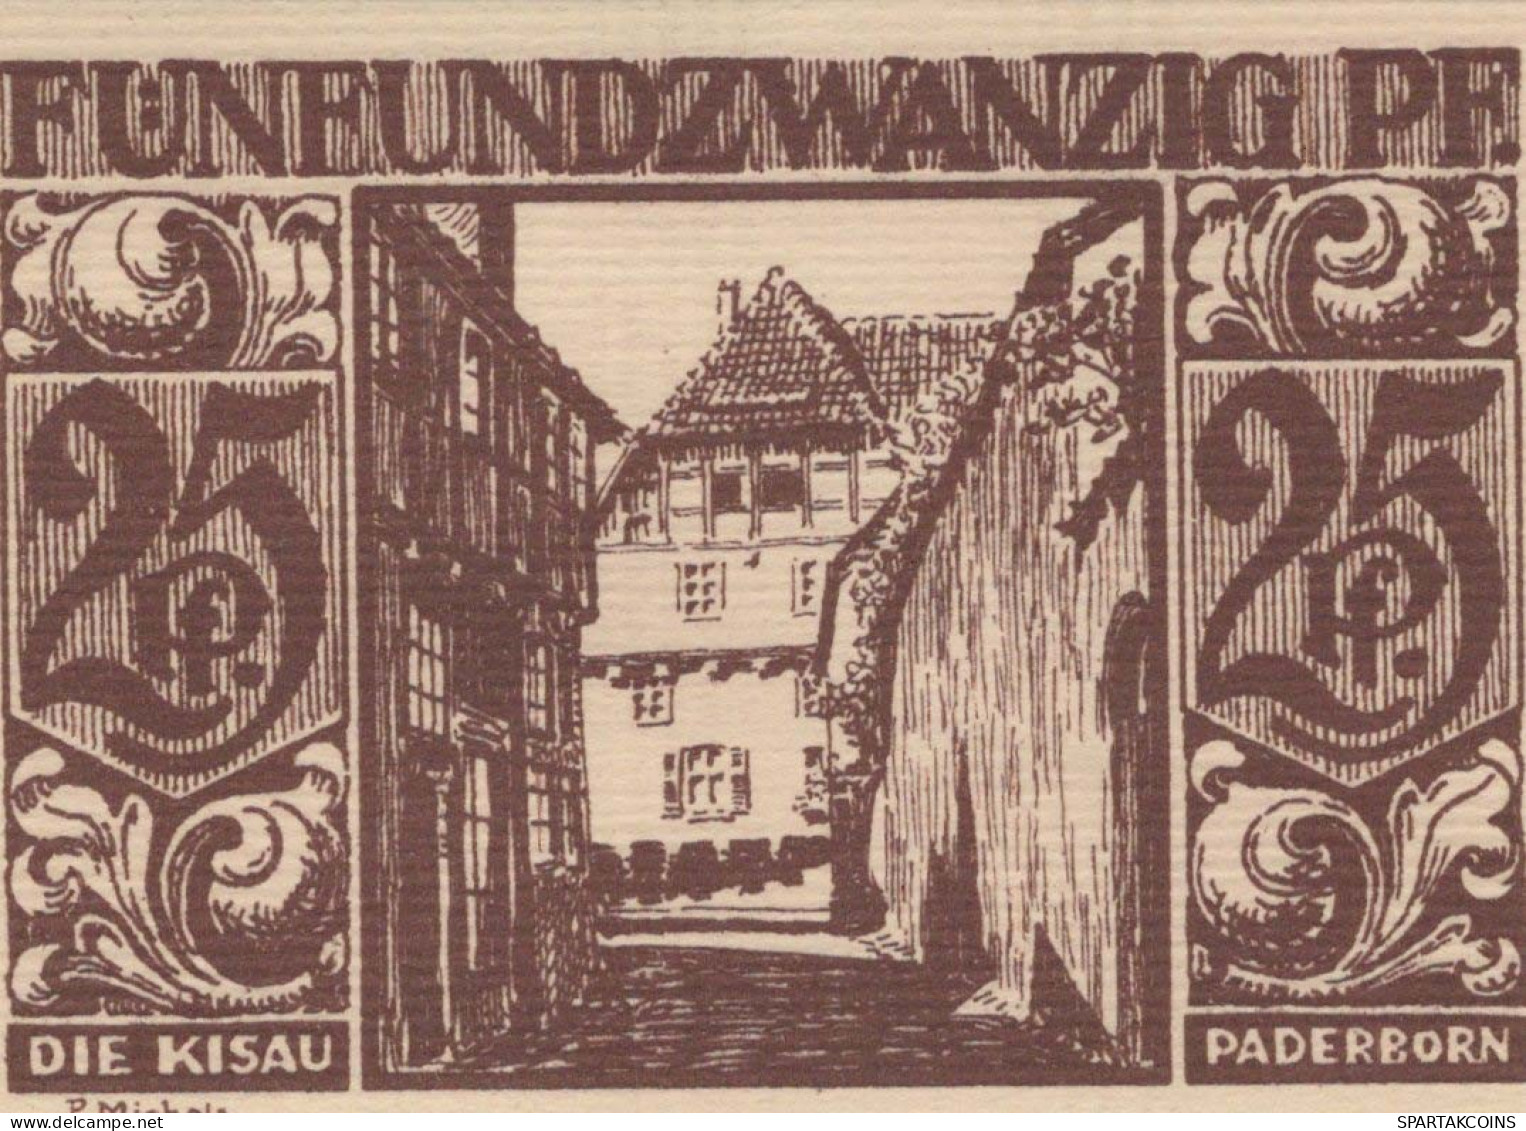 25 PFENNIG 1921 Stadt PADERBORN Westphalia DEUTSCHLAND Notgeld Banknote #PG193 - [11] Emissions Locales